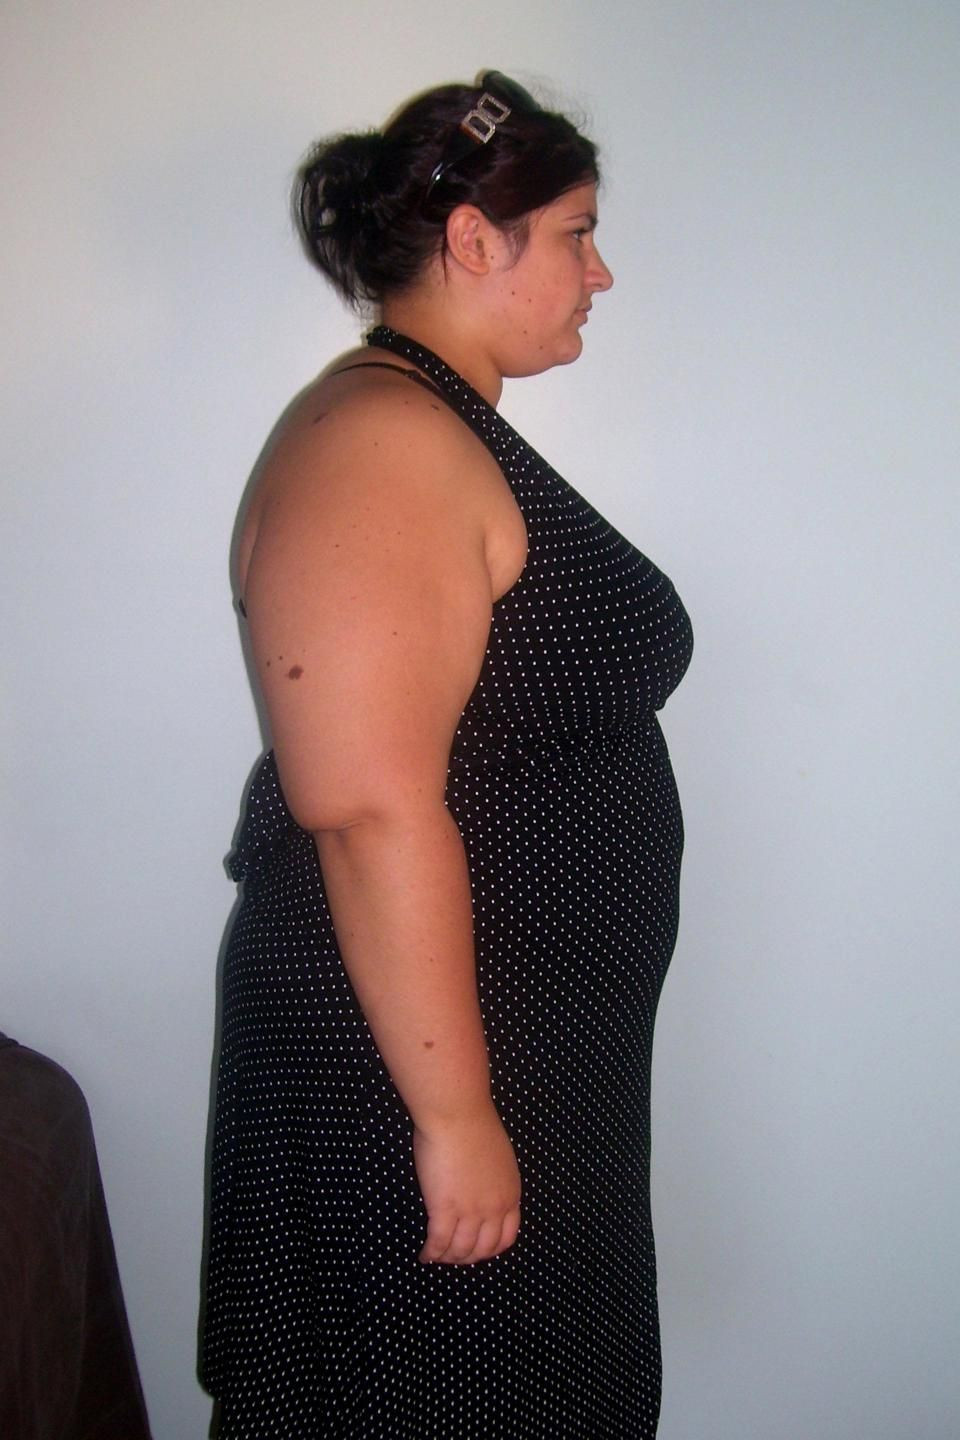 Obez kadın yeni kilosuyla şoke etti! İşte diyet listesi - Resim: 2